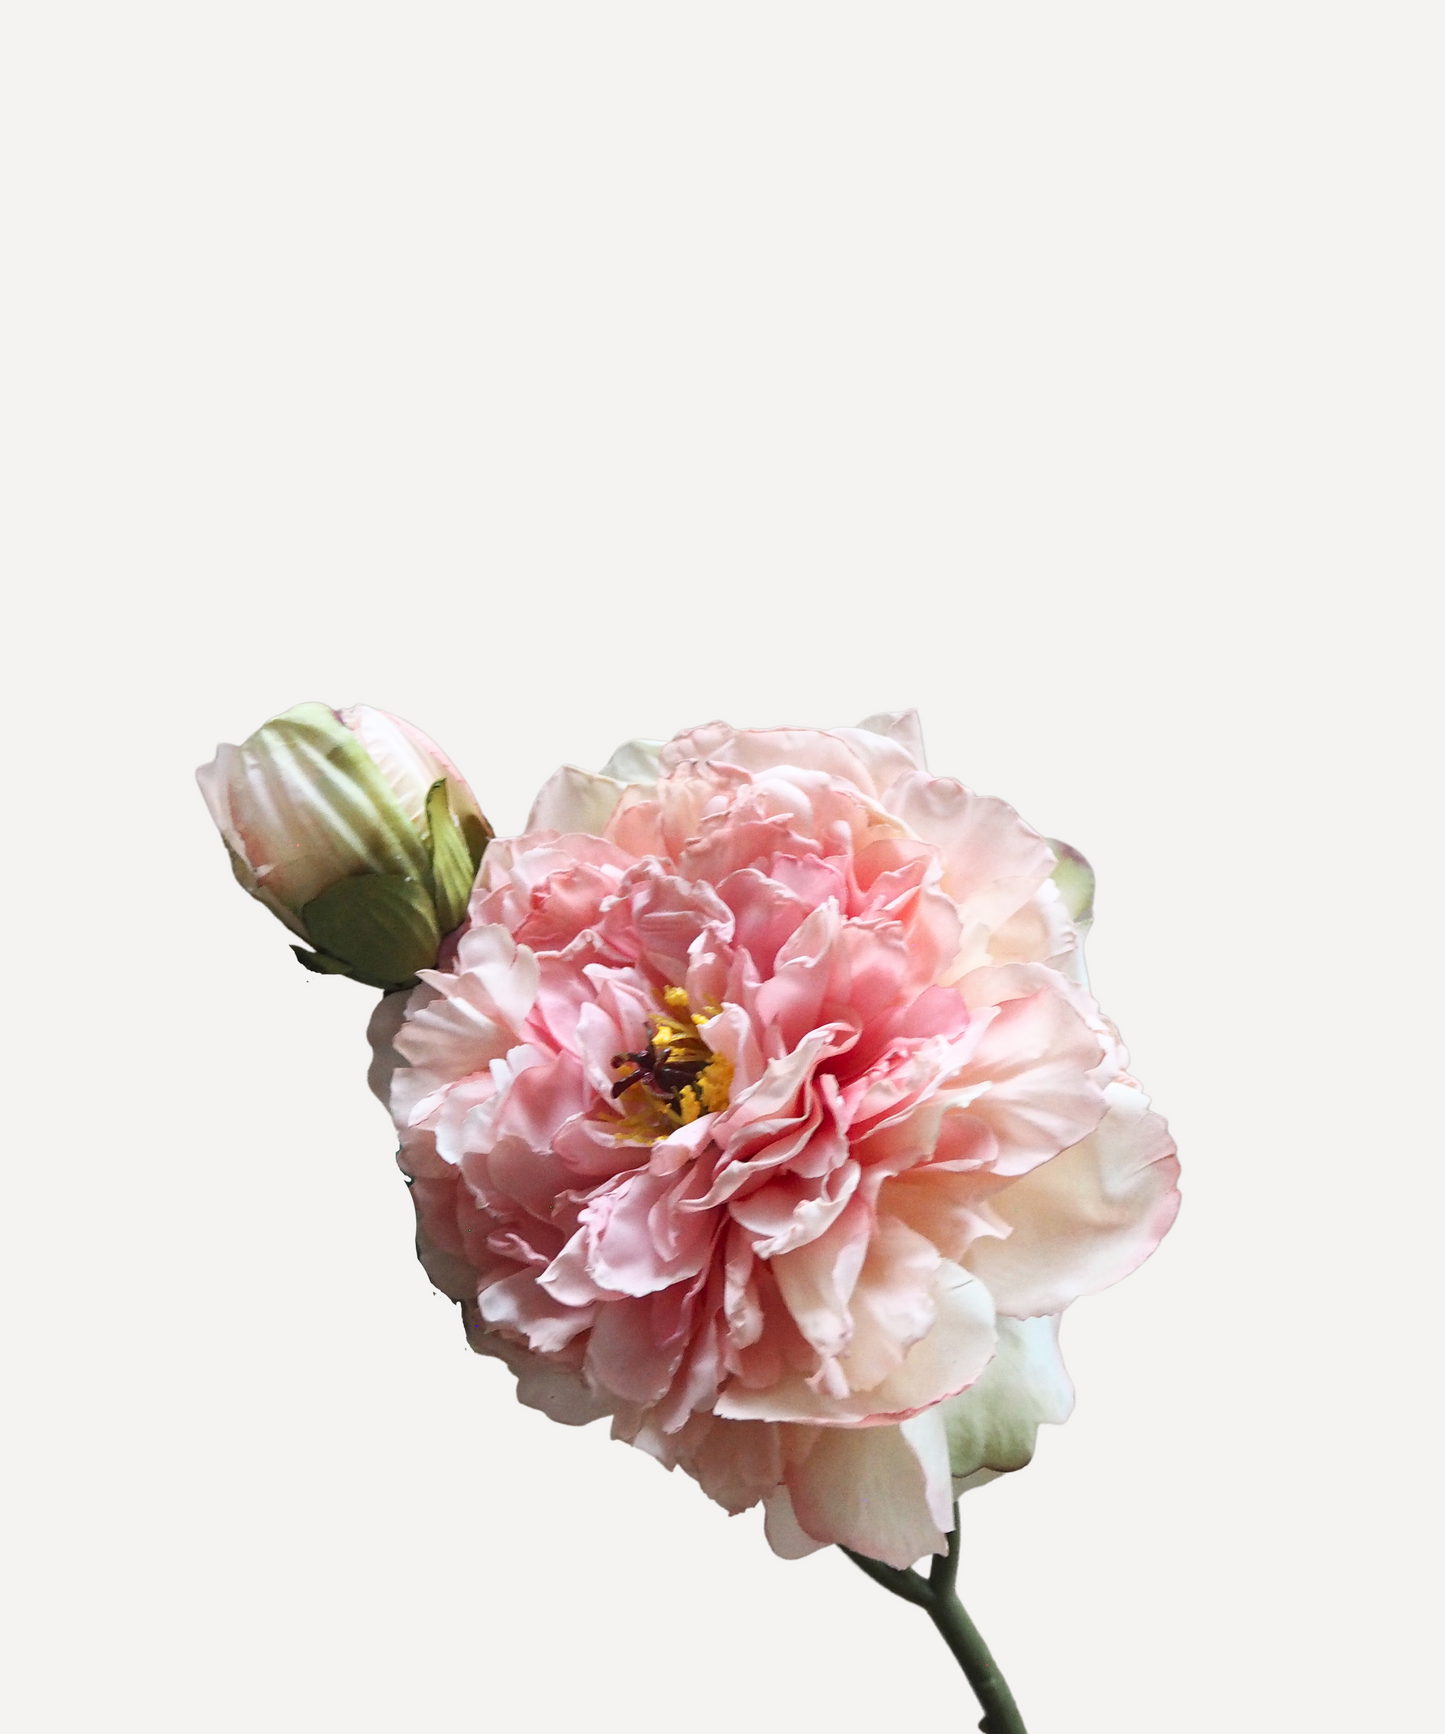 Blooming Peony - Blush Pink, White, Lavender, Coral, Merlot